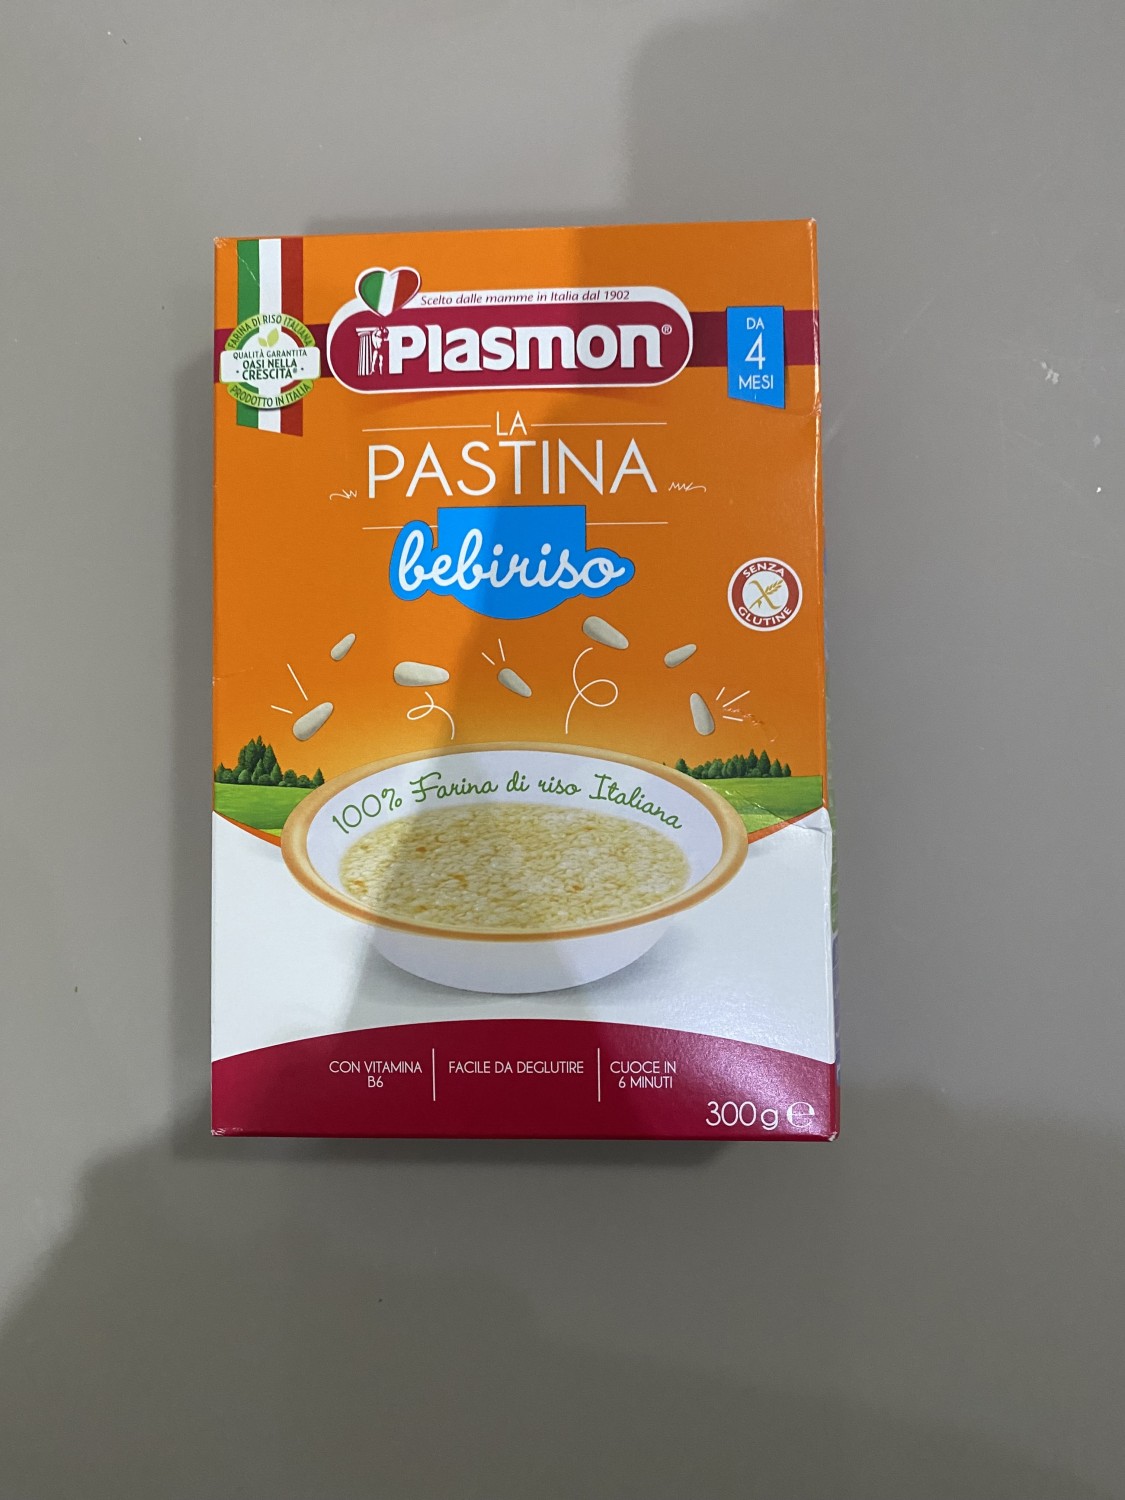 Plasmon Pastina Gemmine 300g : : Alimentari e cura della casa